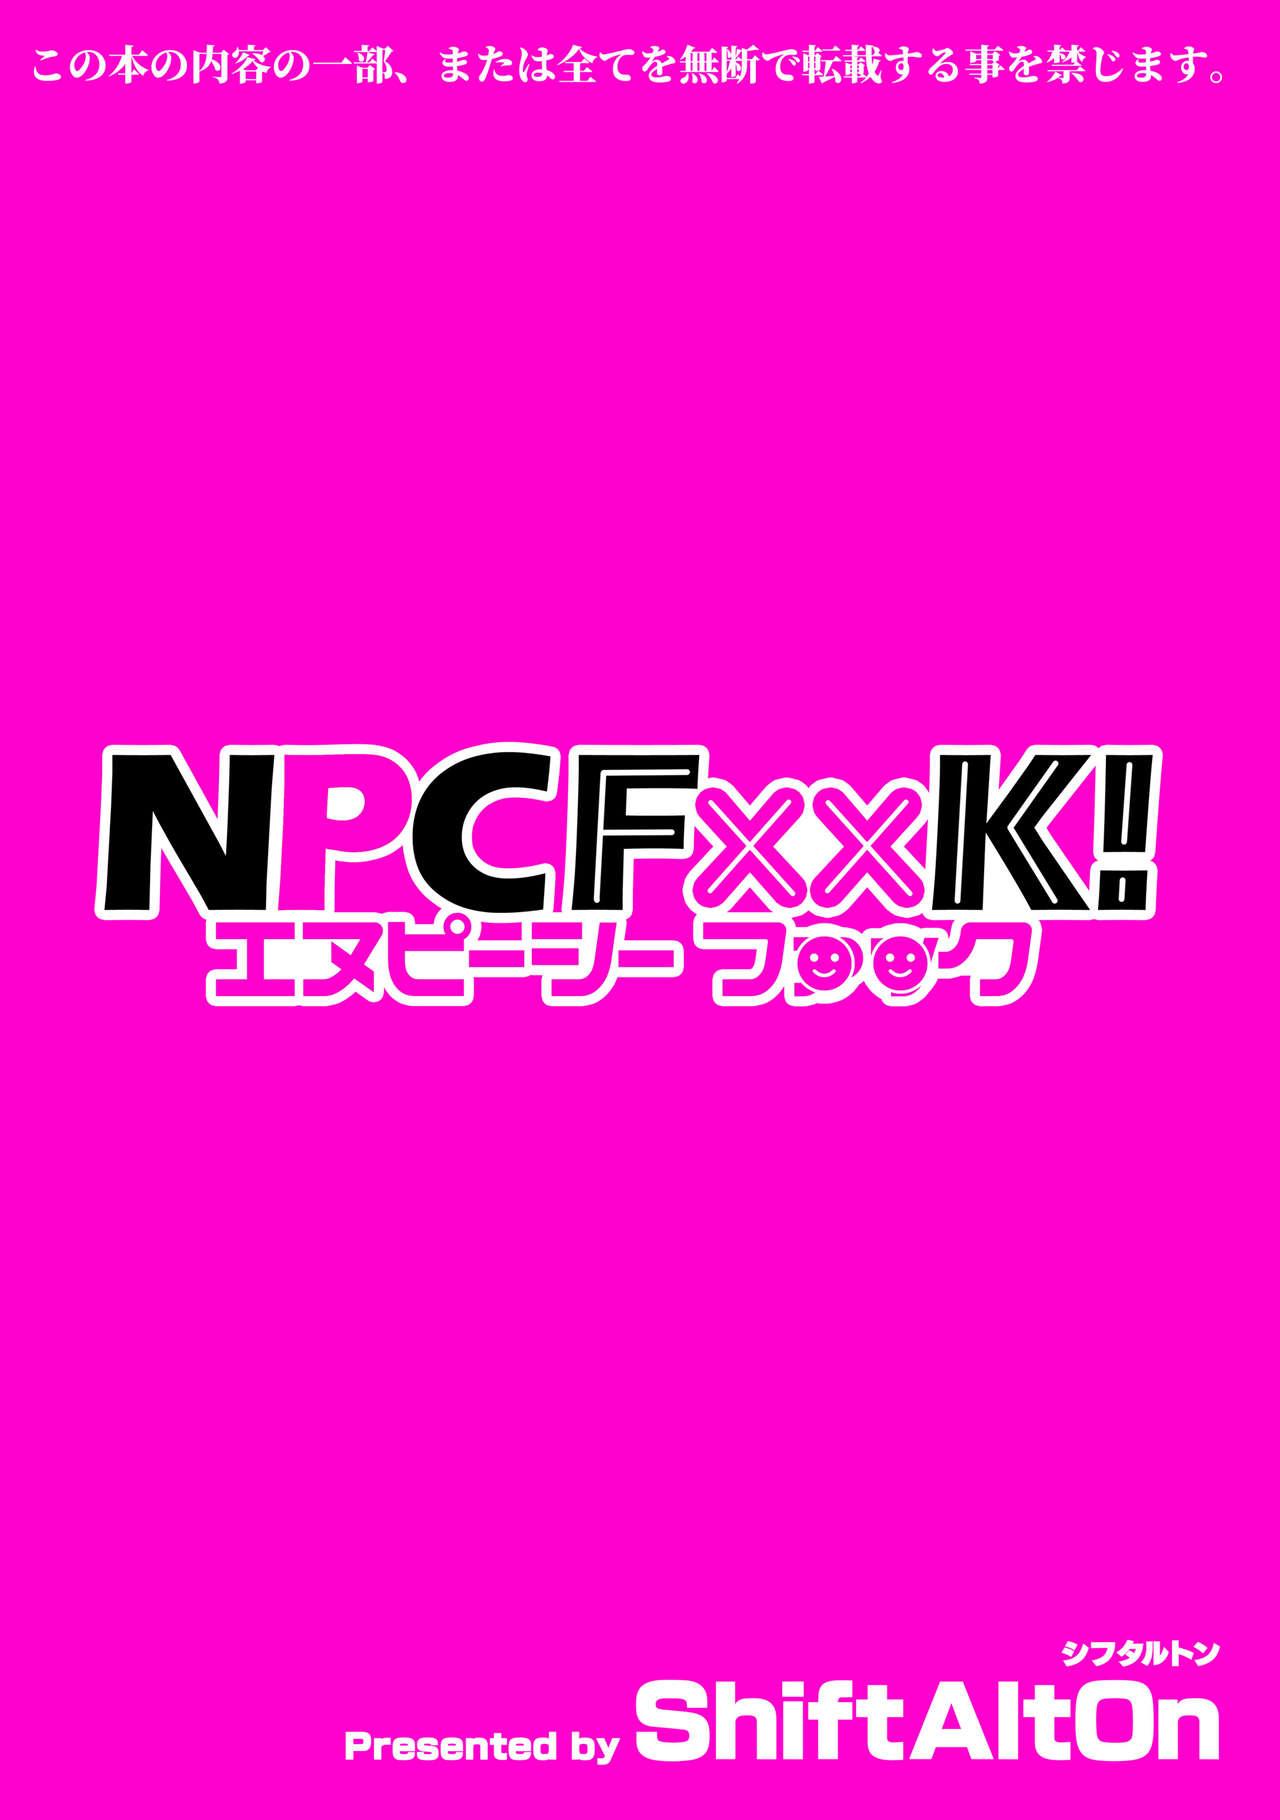 NPCFxxK! 23